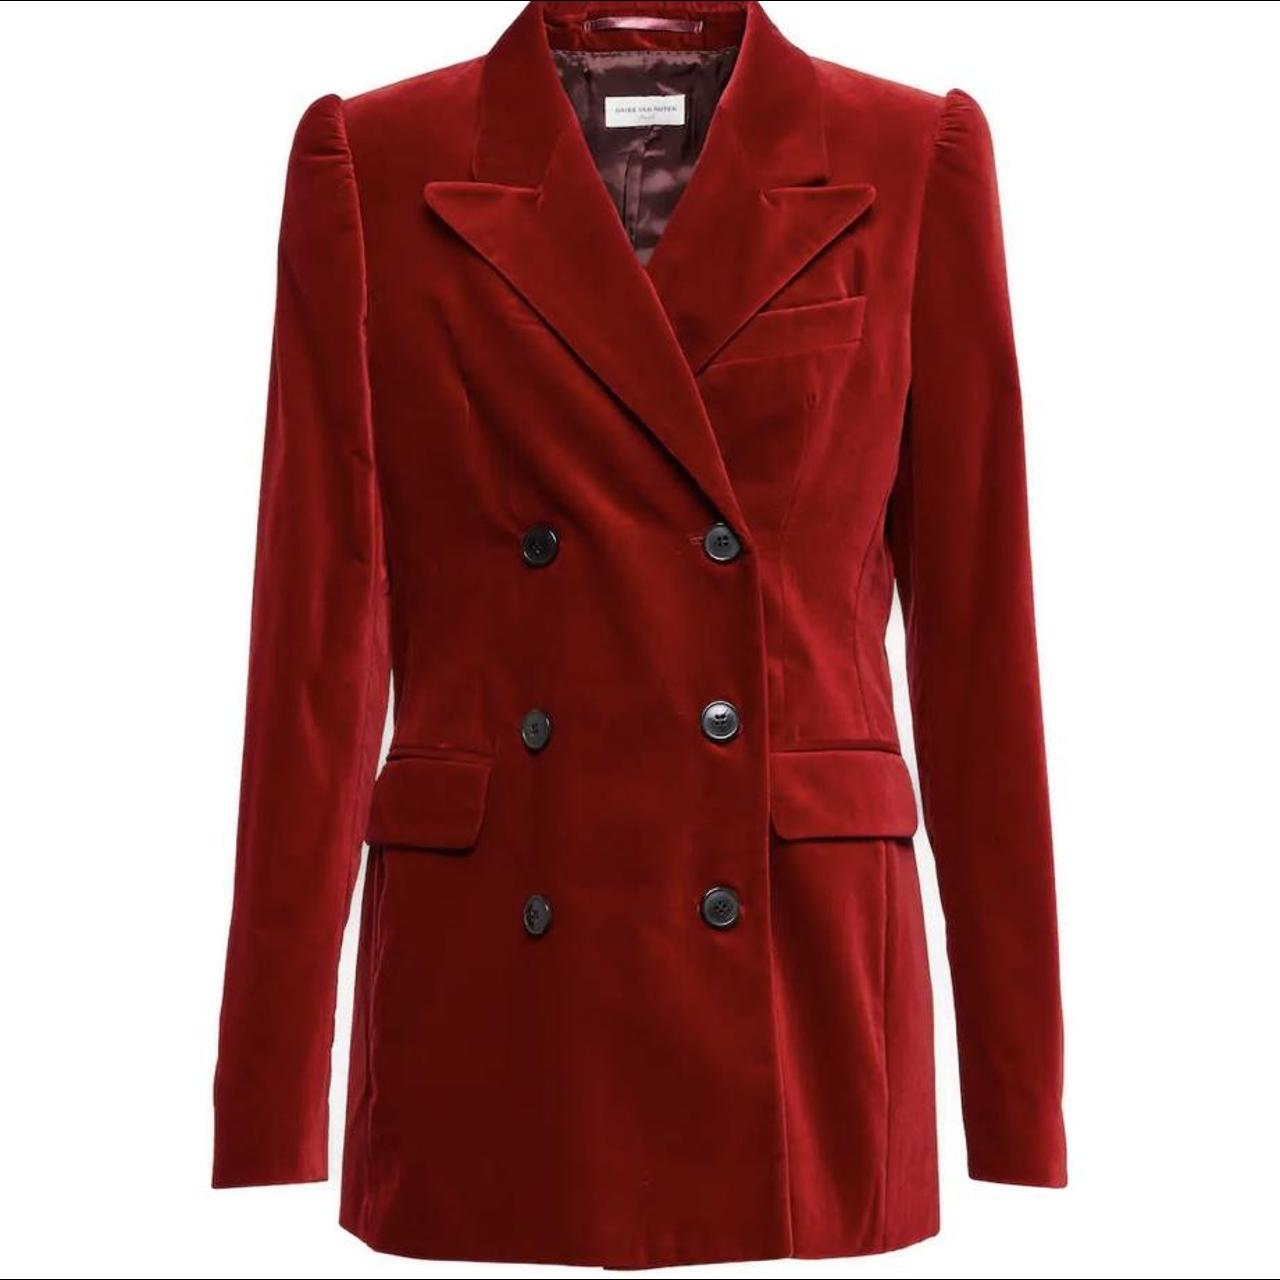 Dries Van Noten Women's Red Jacket